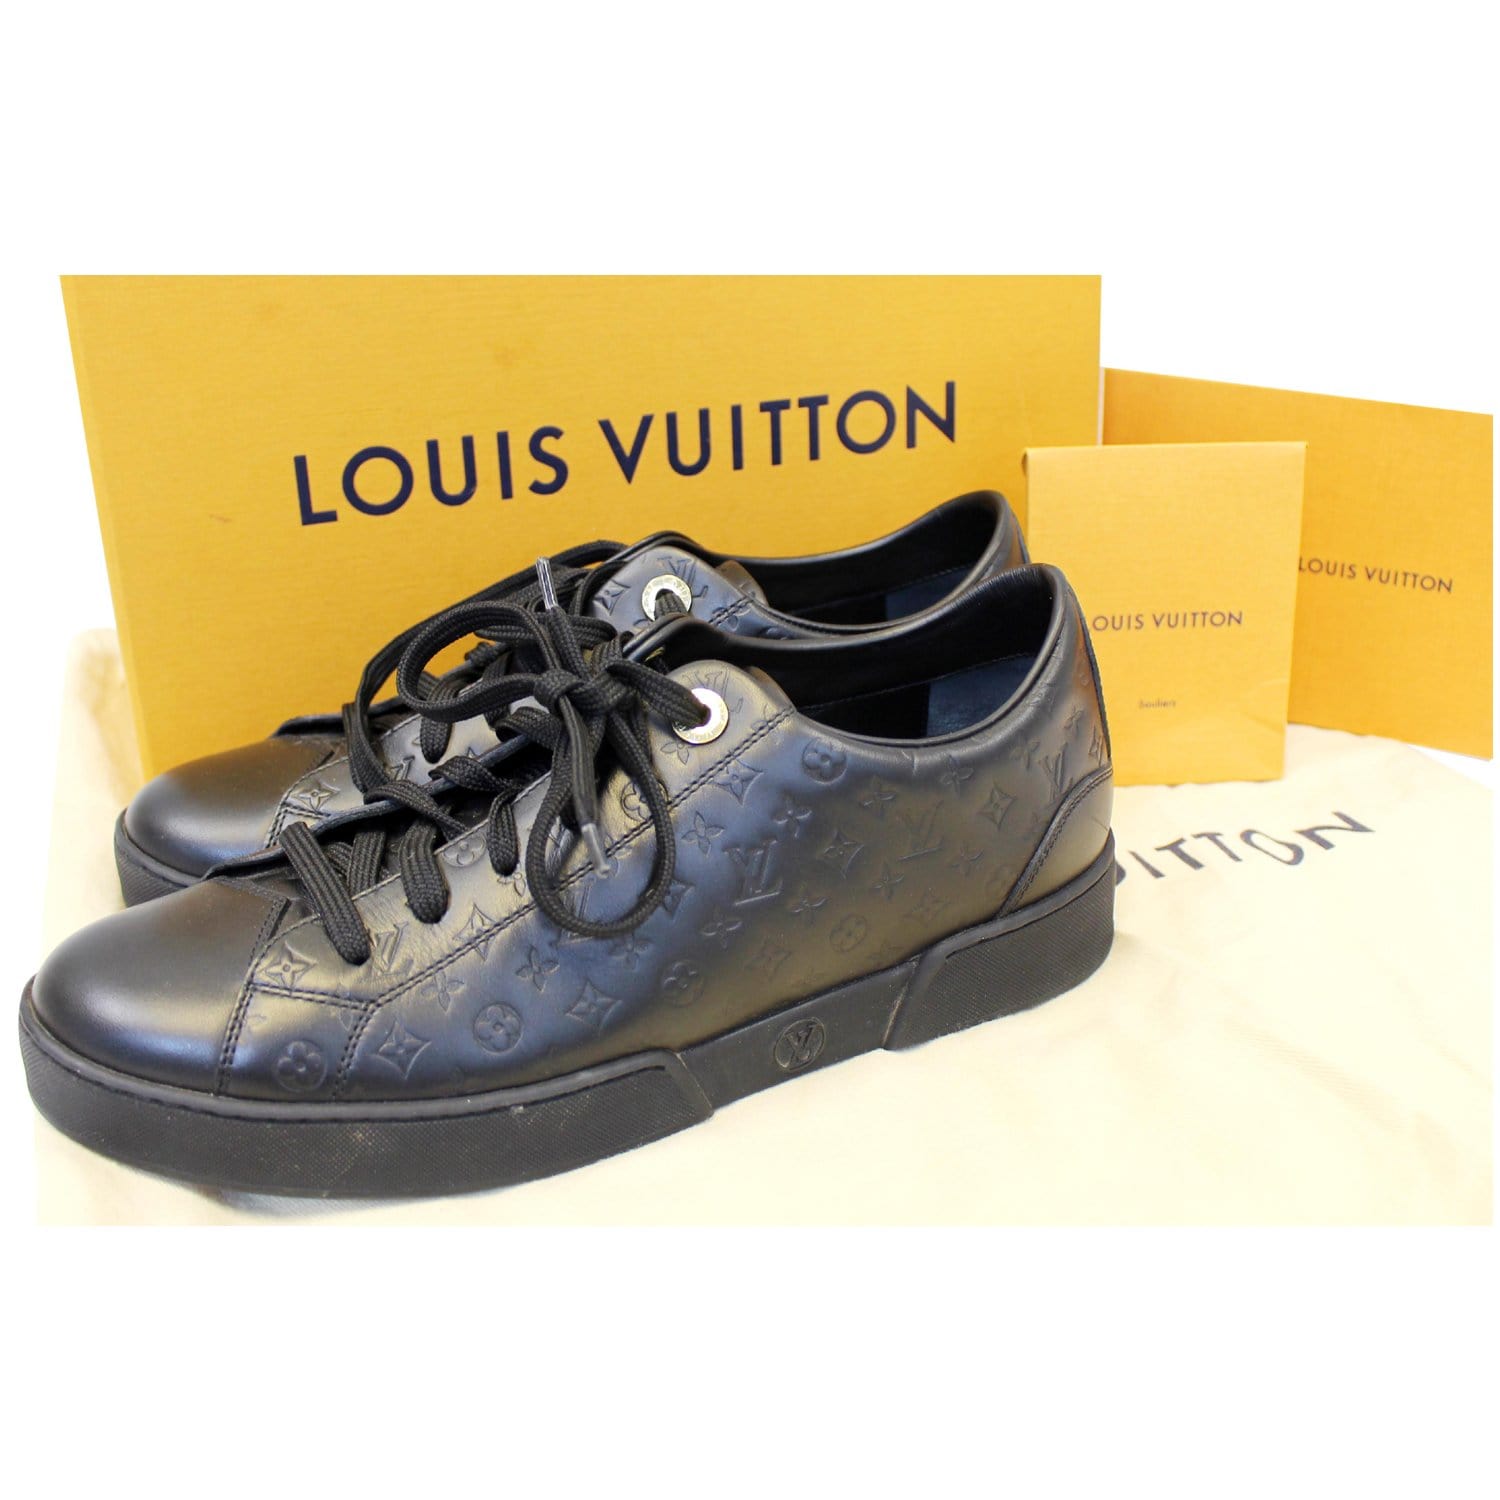 Bóp cầm tay nữ Louis Vuitton chính hãng lịch lãm mã N90129